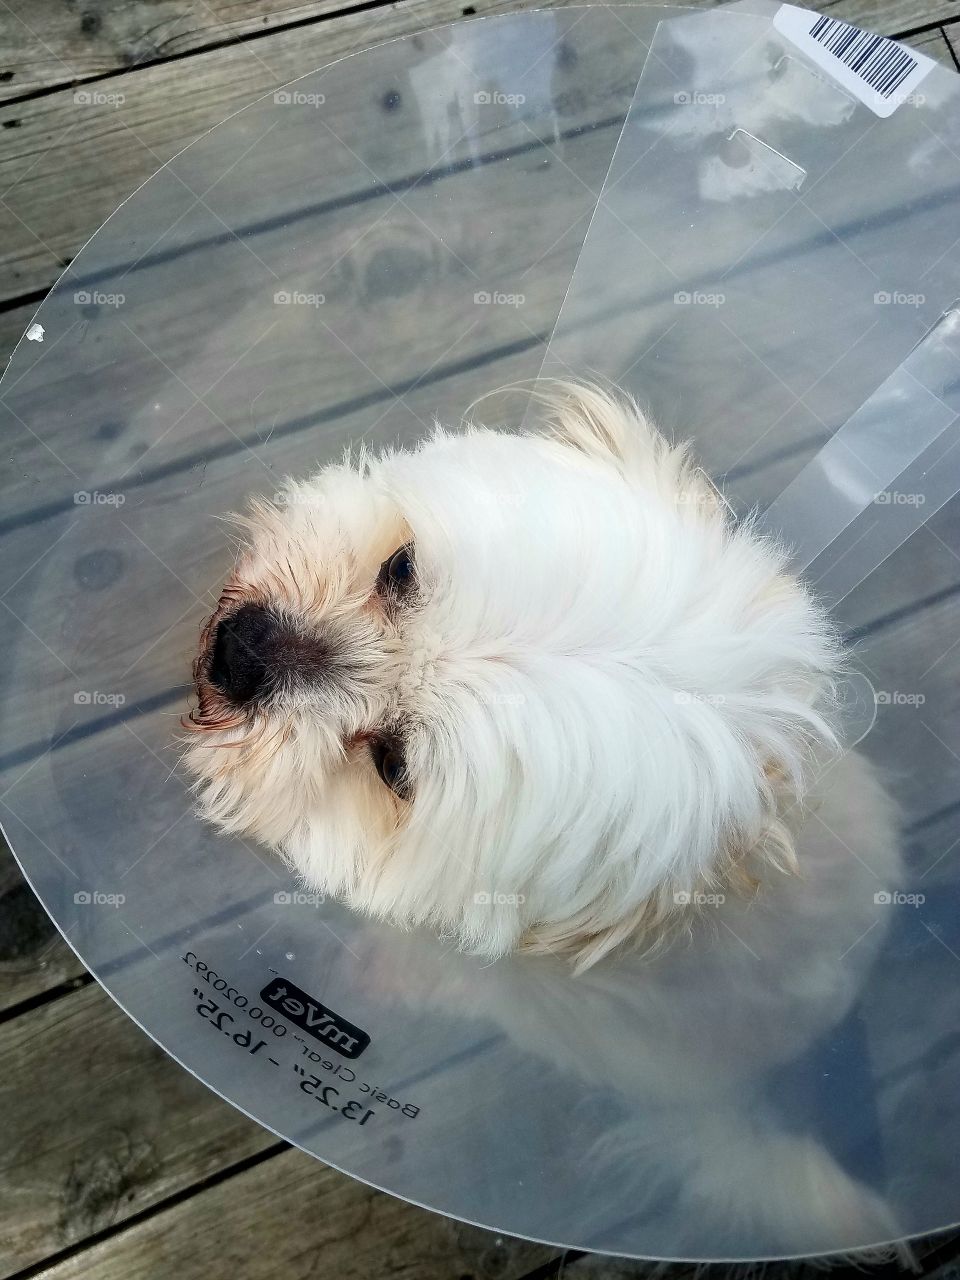 Not so happy dog, after vet visit.